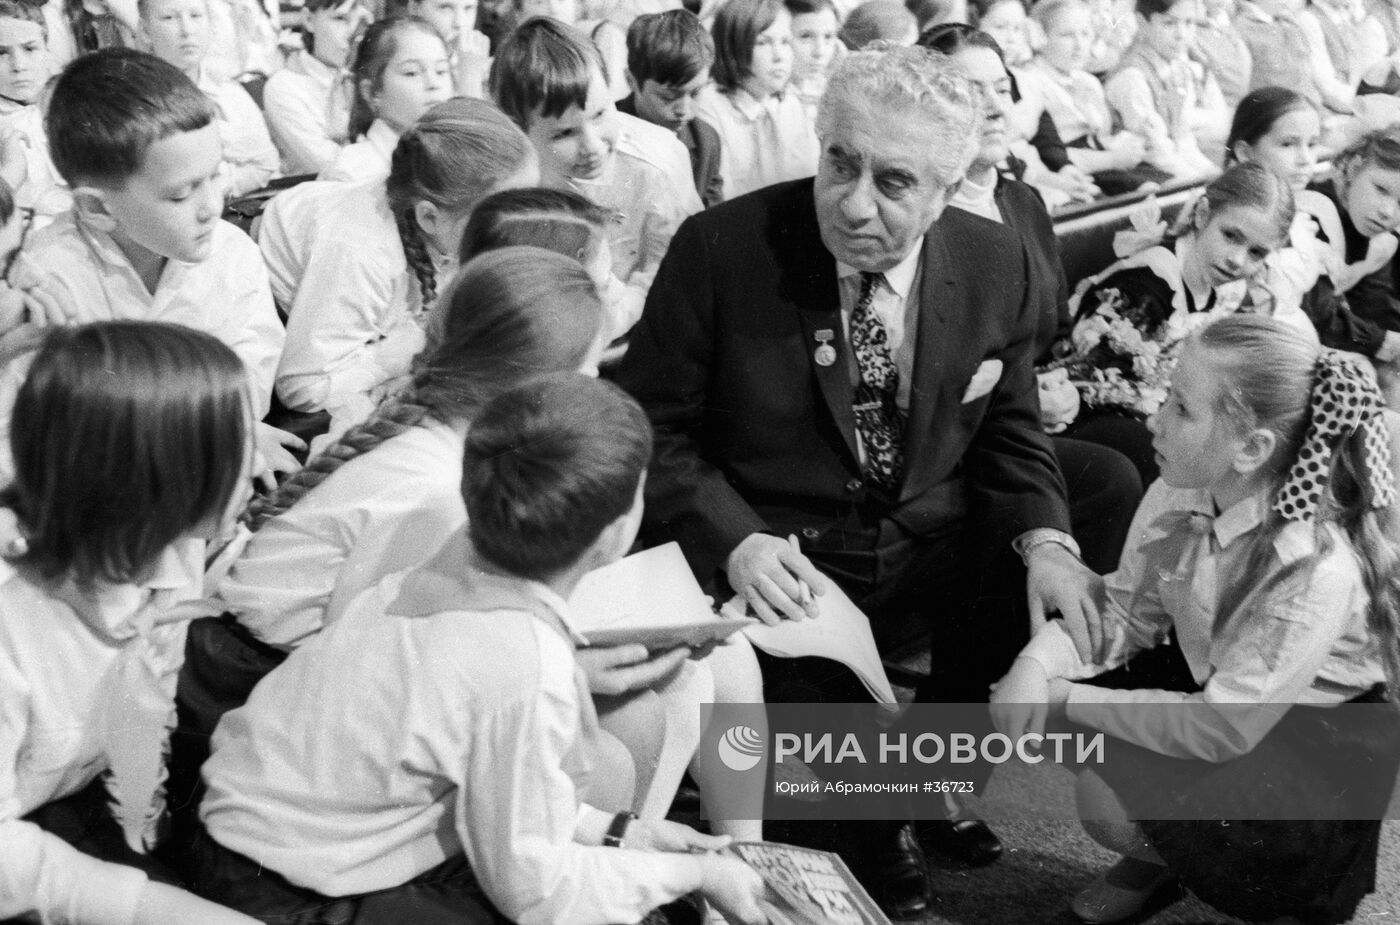 Арам Хачатурян на встрече со школьниками